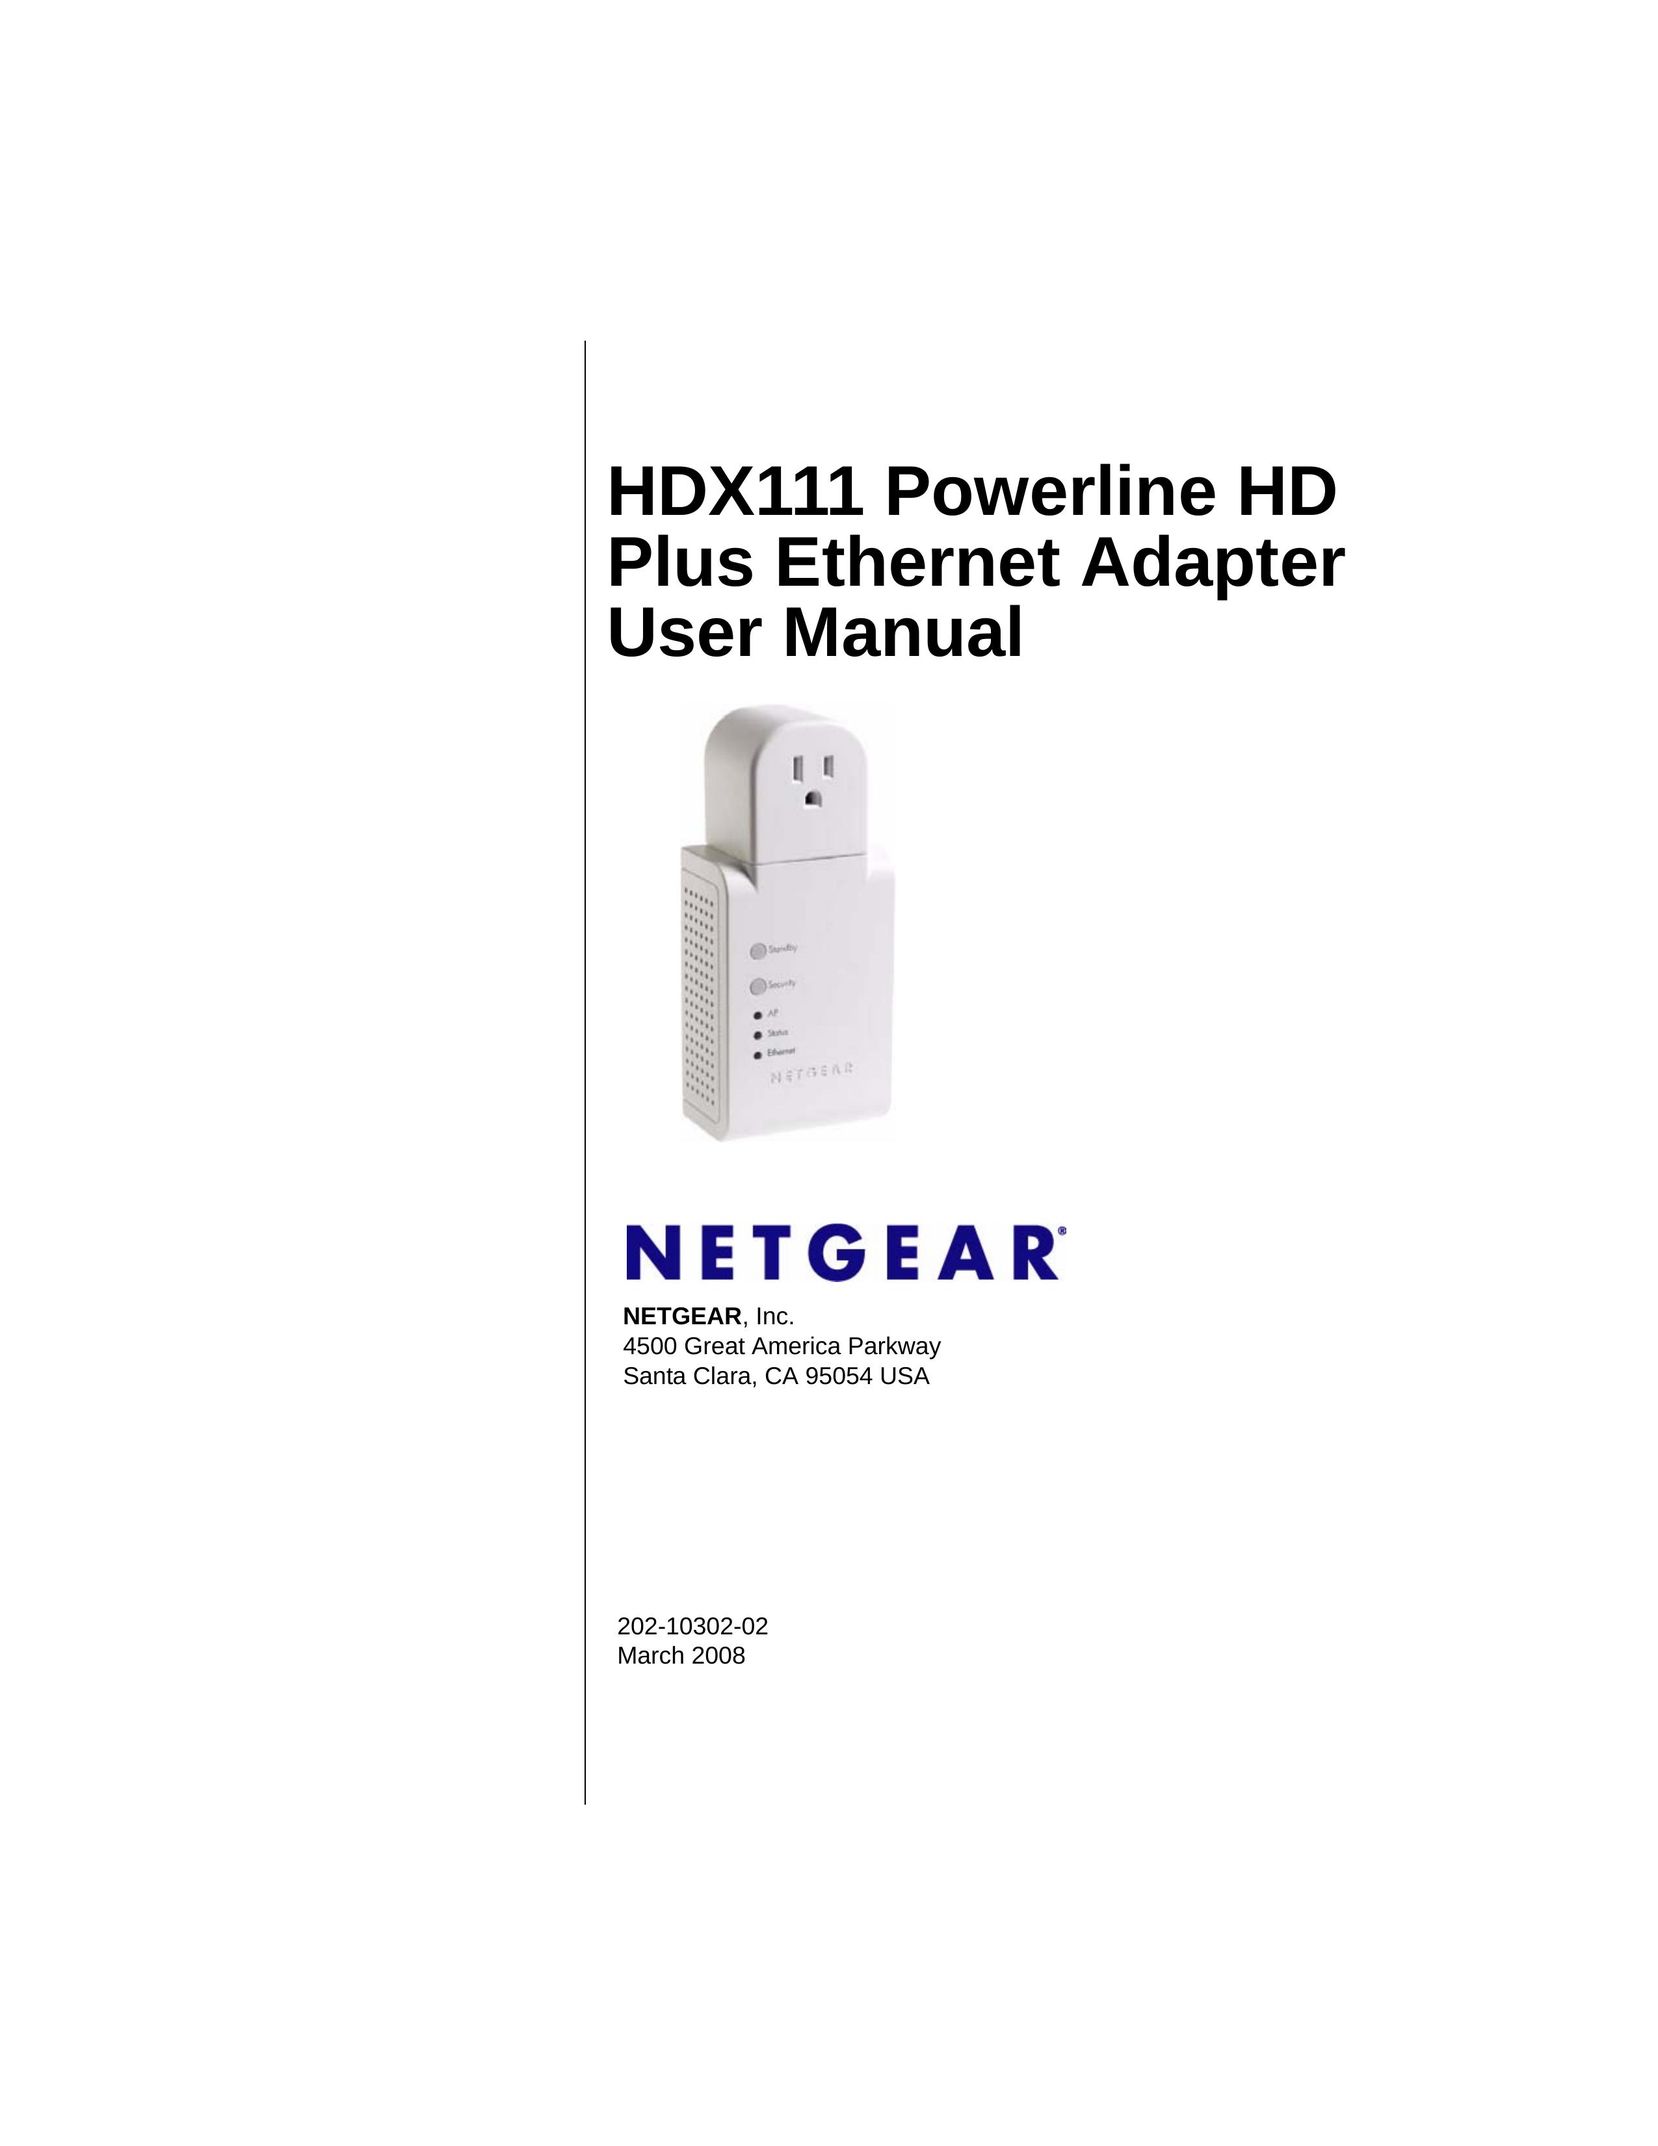 NETGEAR HDX111 Network Card User Manual